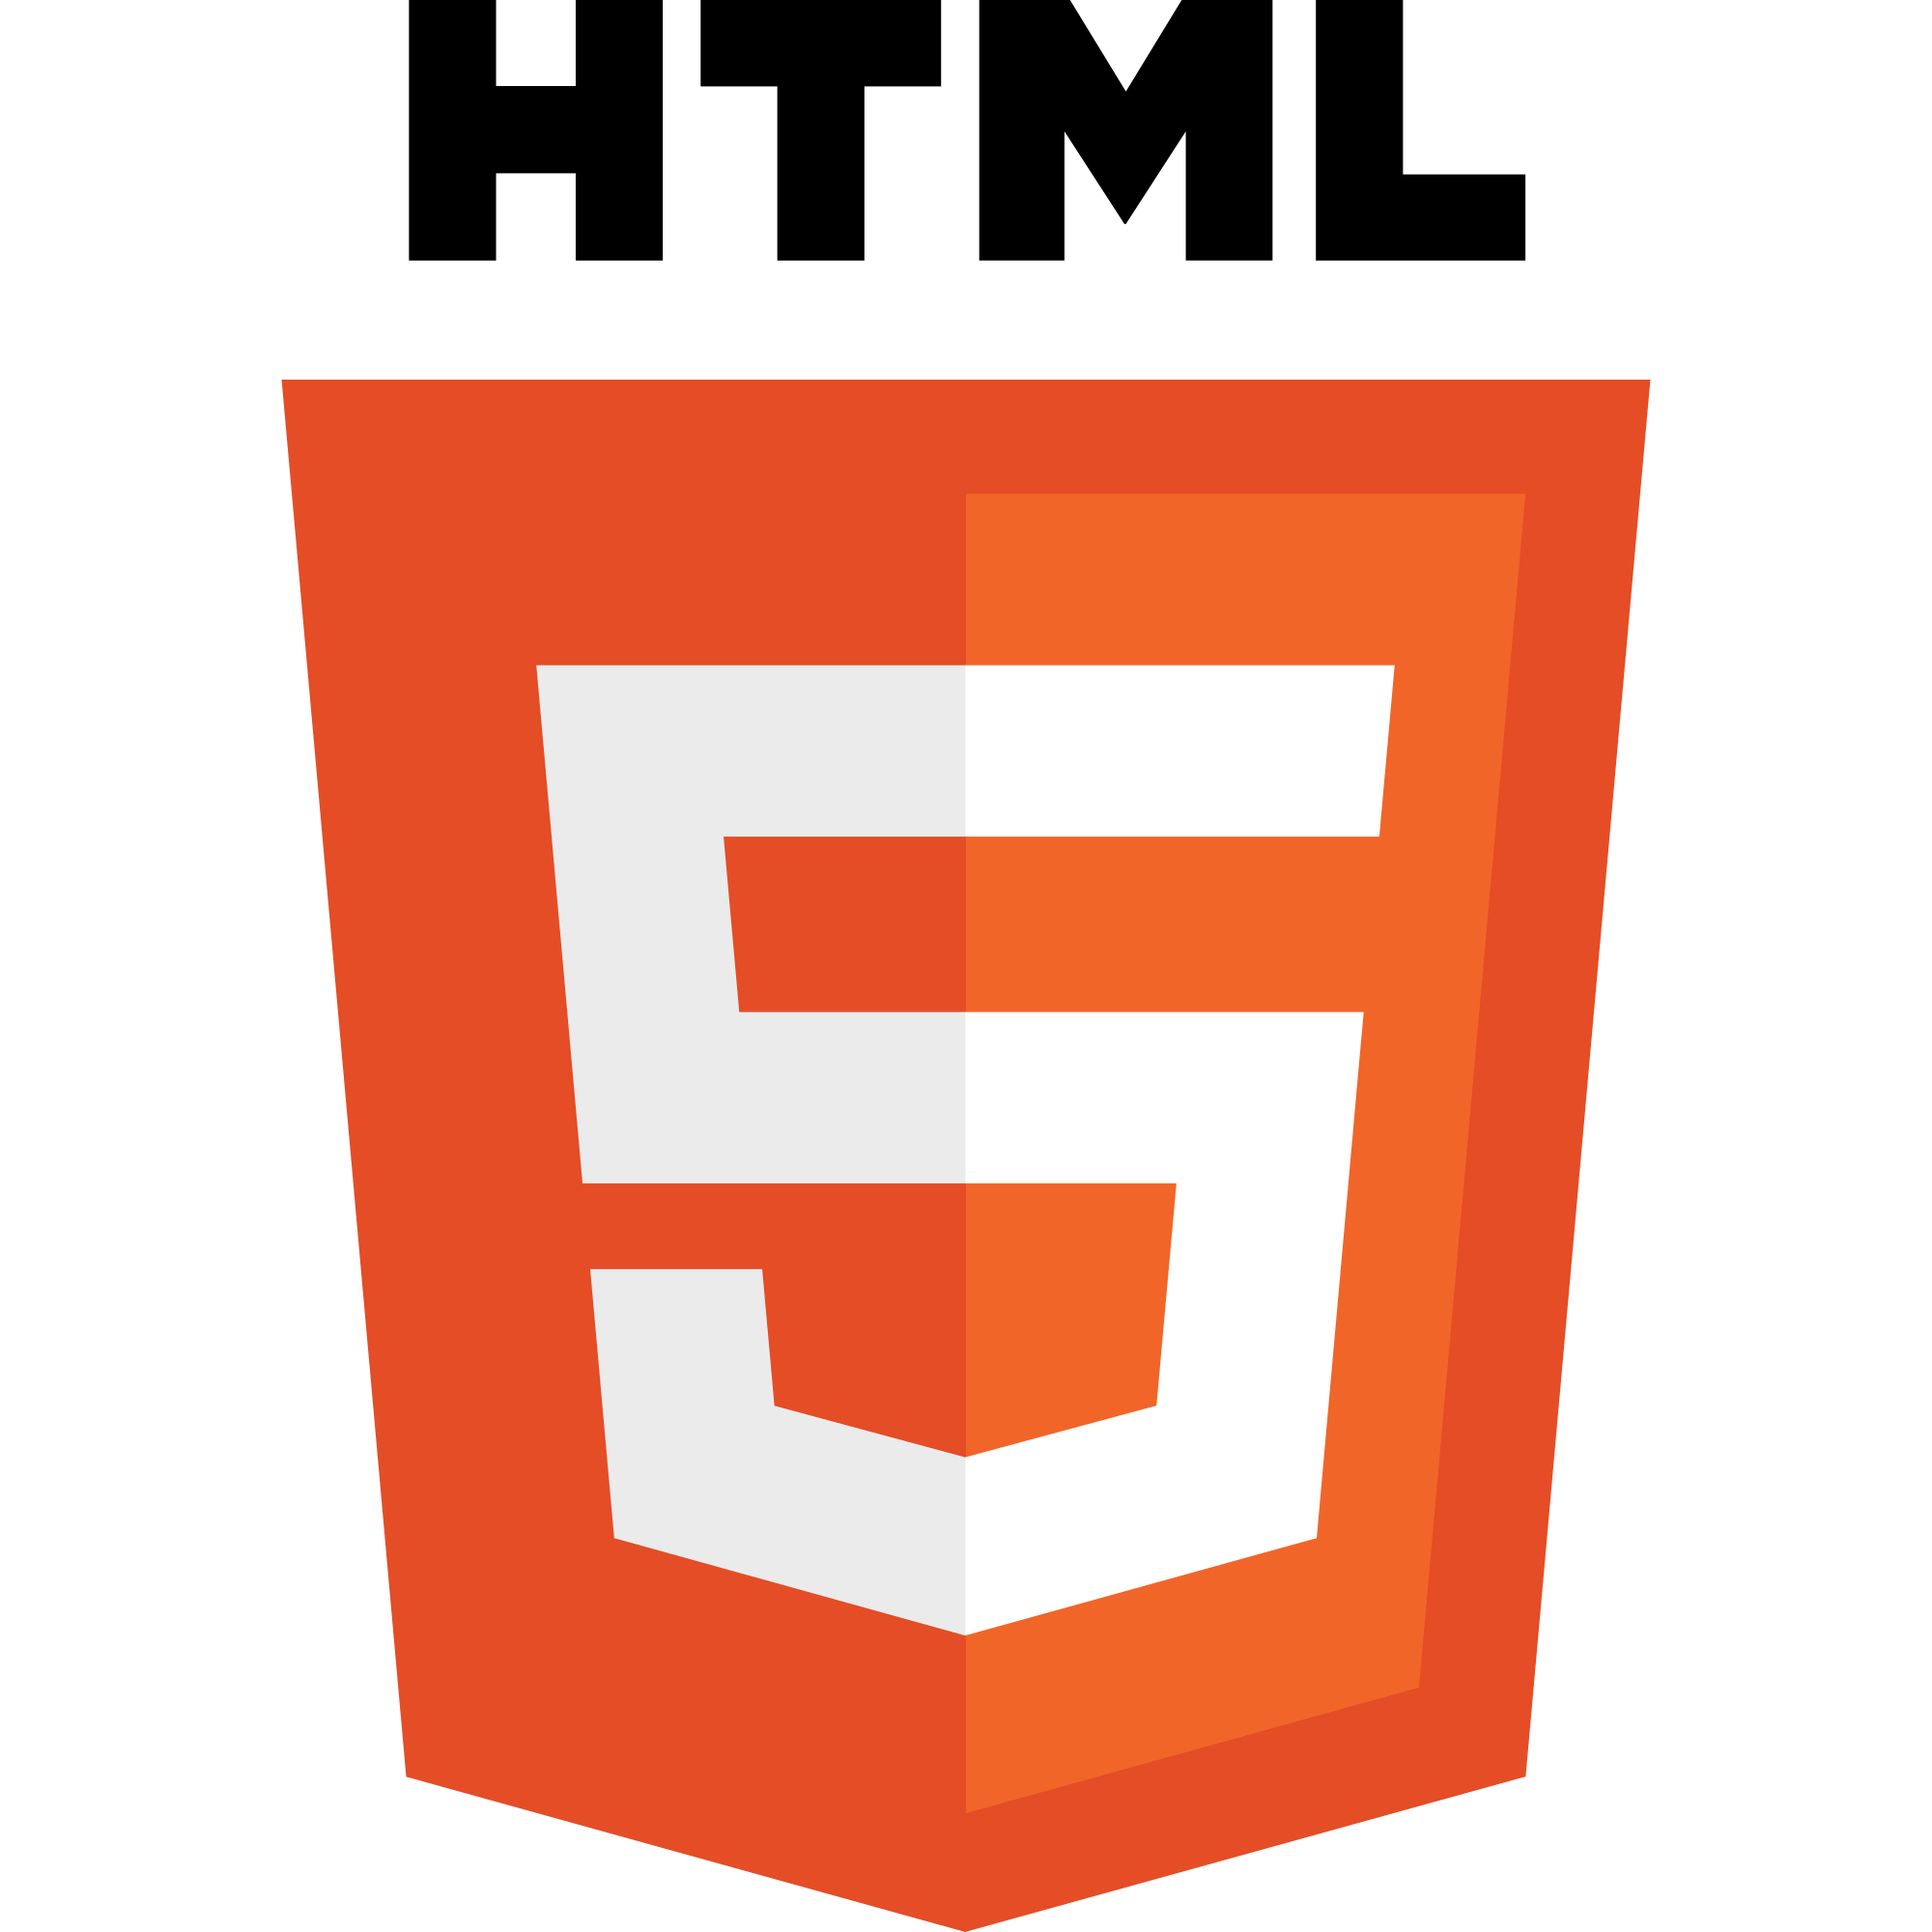 logo of the HTML5 framework